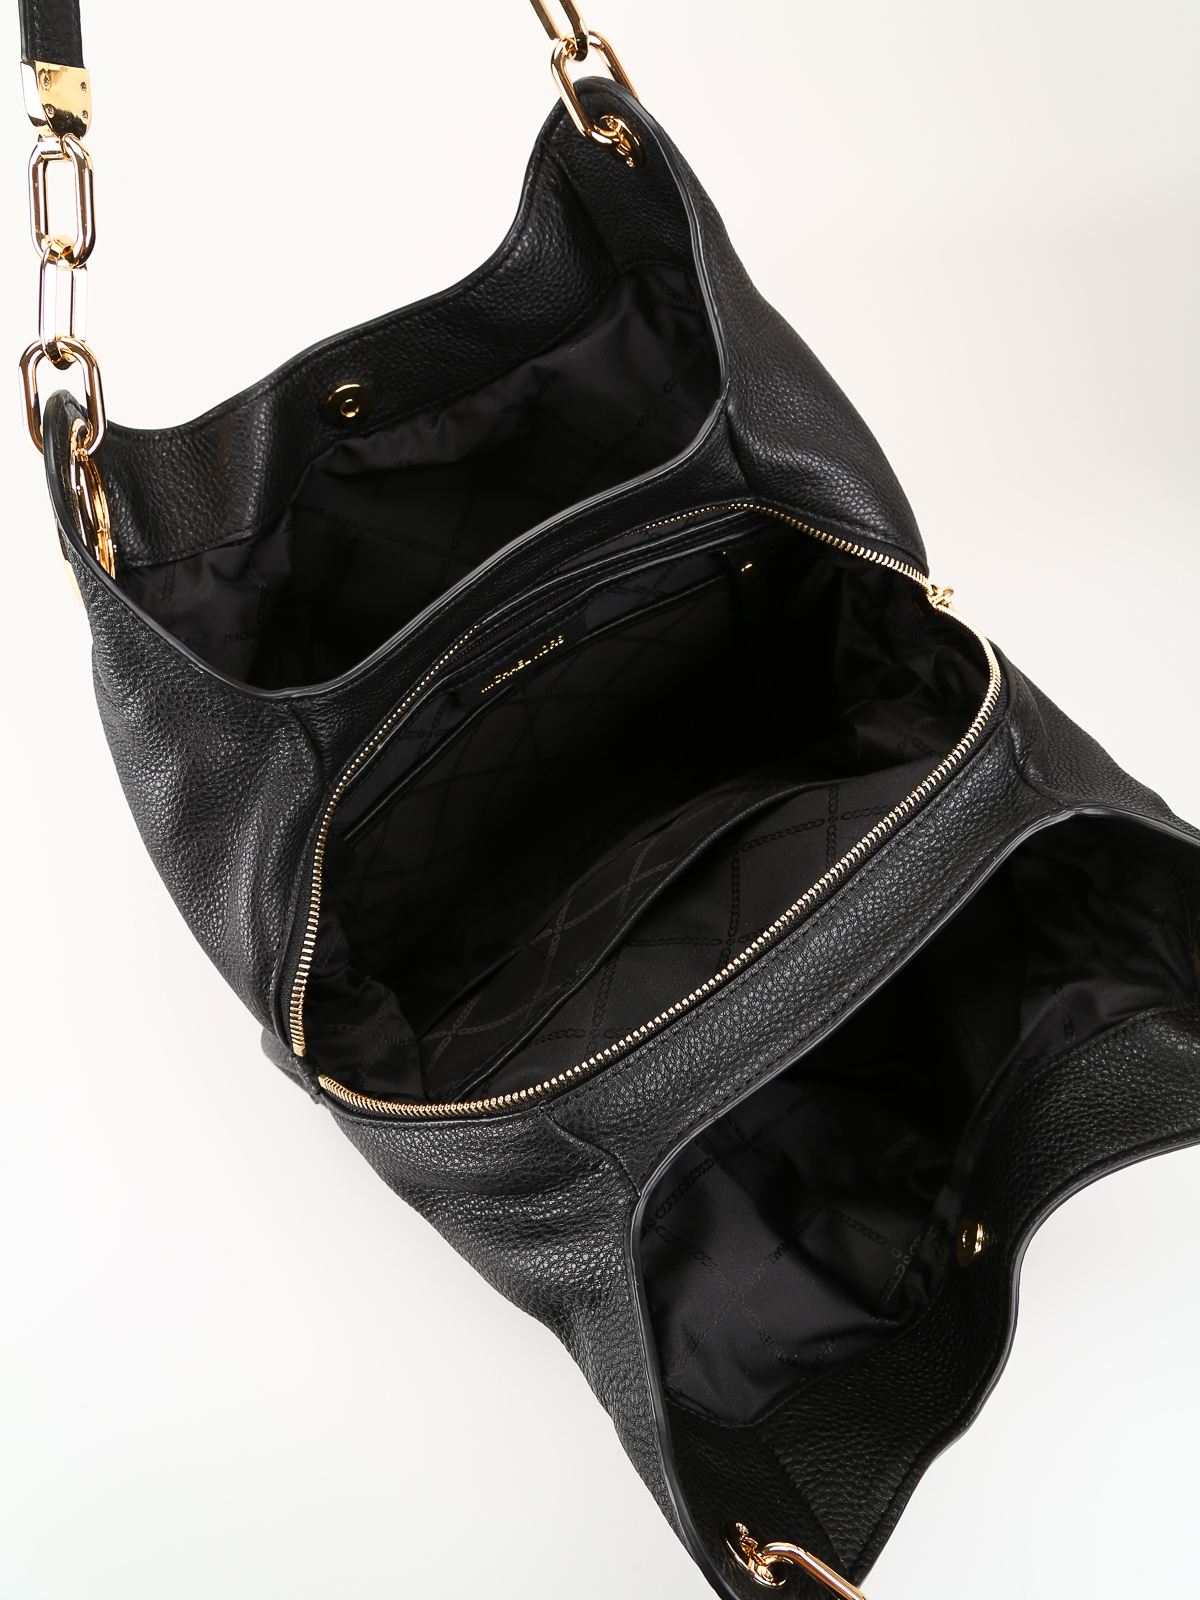 MICHAEL Michael Kors Lillie Large Pebbled Leather Shoulder Bag in Natural   Lyst